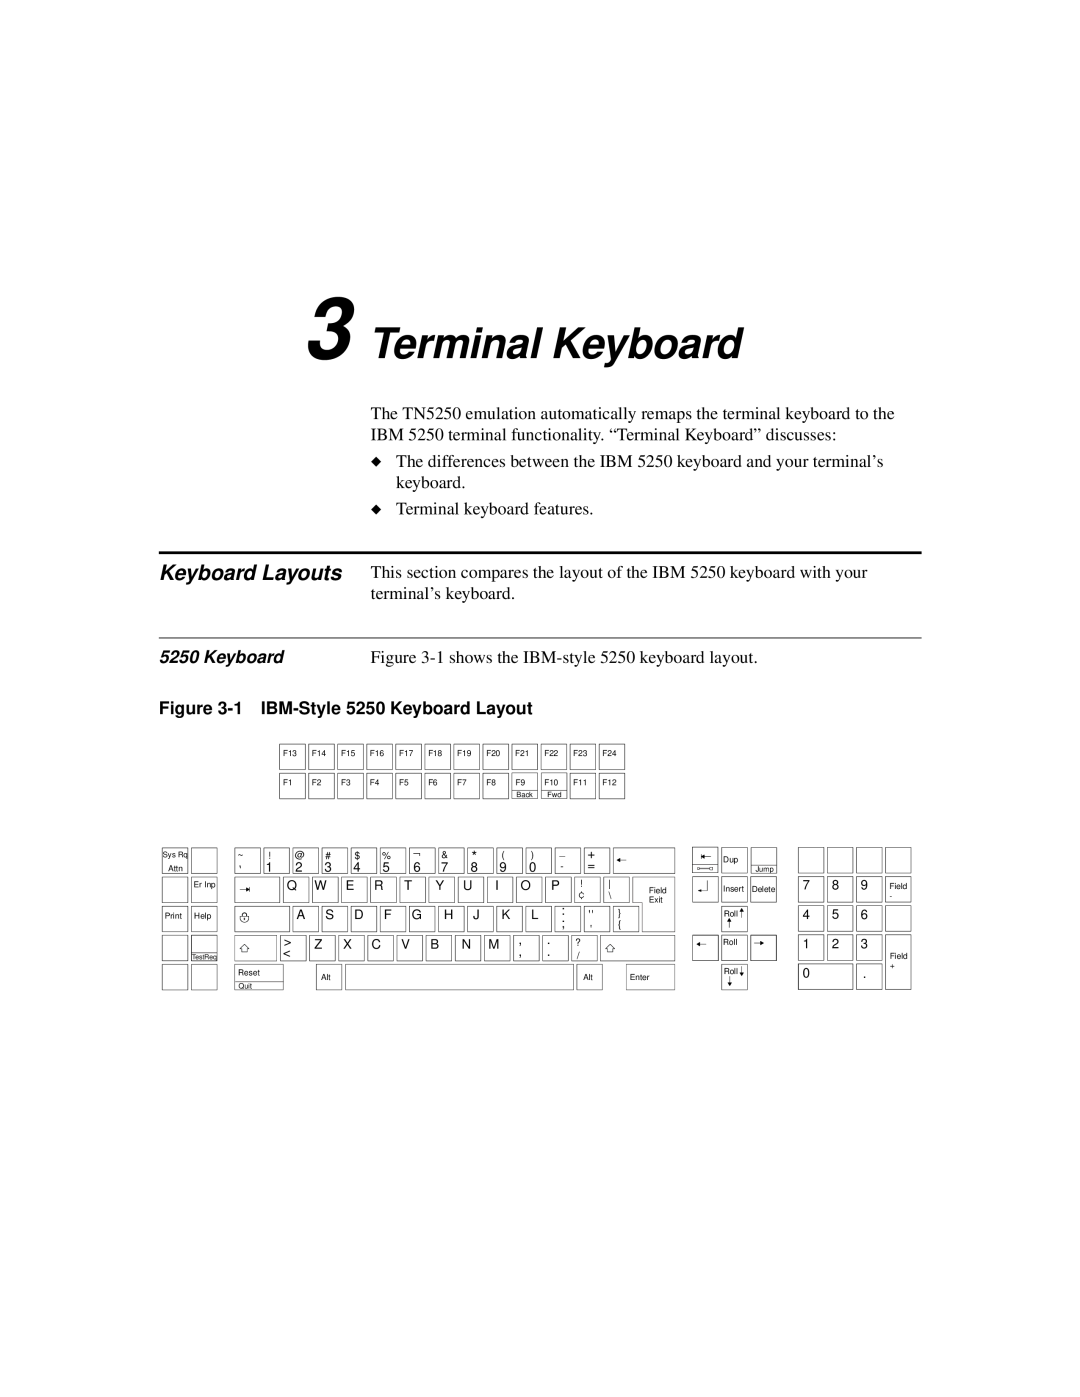 IBM TN5250 manual Terminal Keyboard 